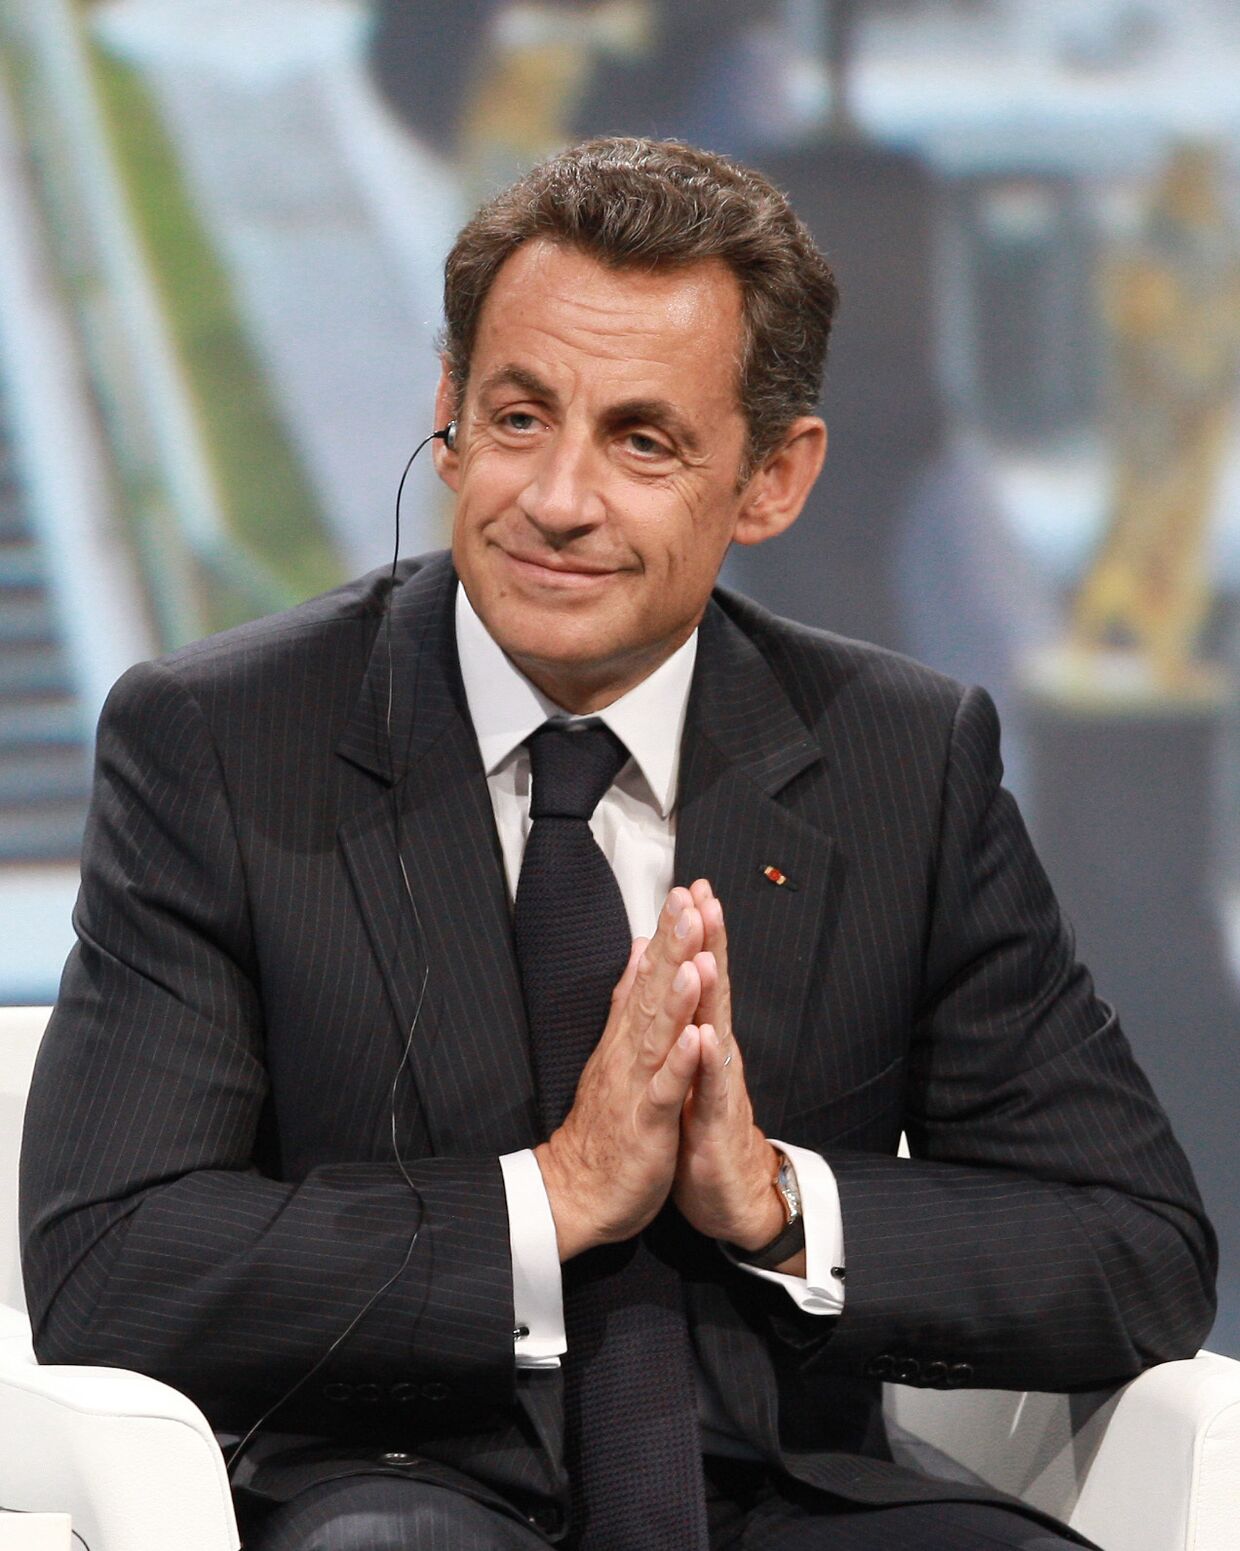 Николя Саркози на заседании ПМЭФ-2010 Мировая экономика. Переосмысление глобального развития